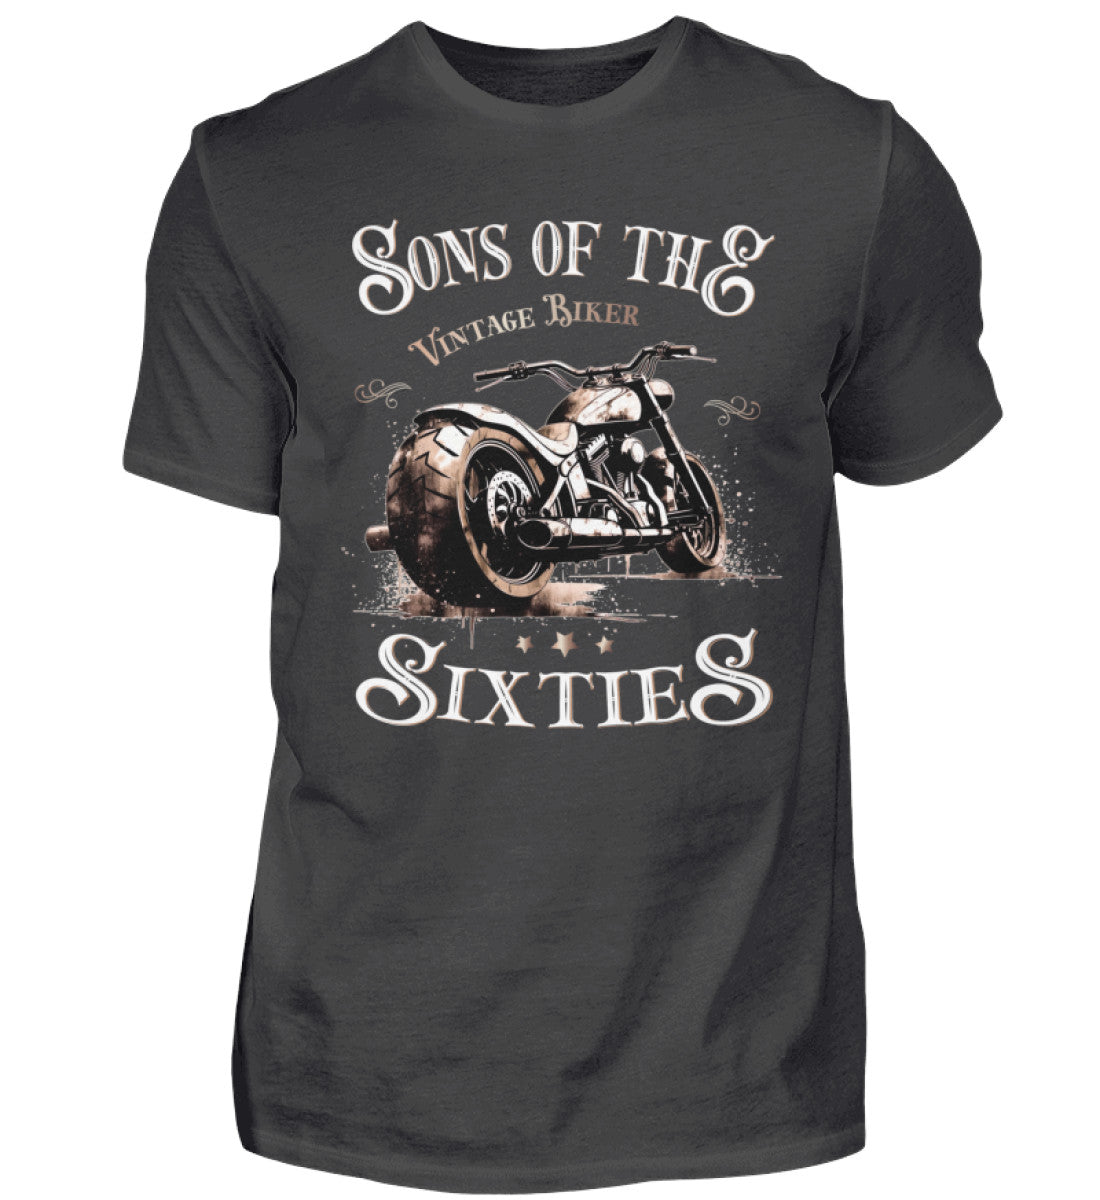 Ein Biker T-Shirt für Motorradfahrer von Wingbikers mit dem Aufdruck, Sons of the Sixties - Vintage Biker, in dunkelgrau.